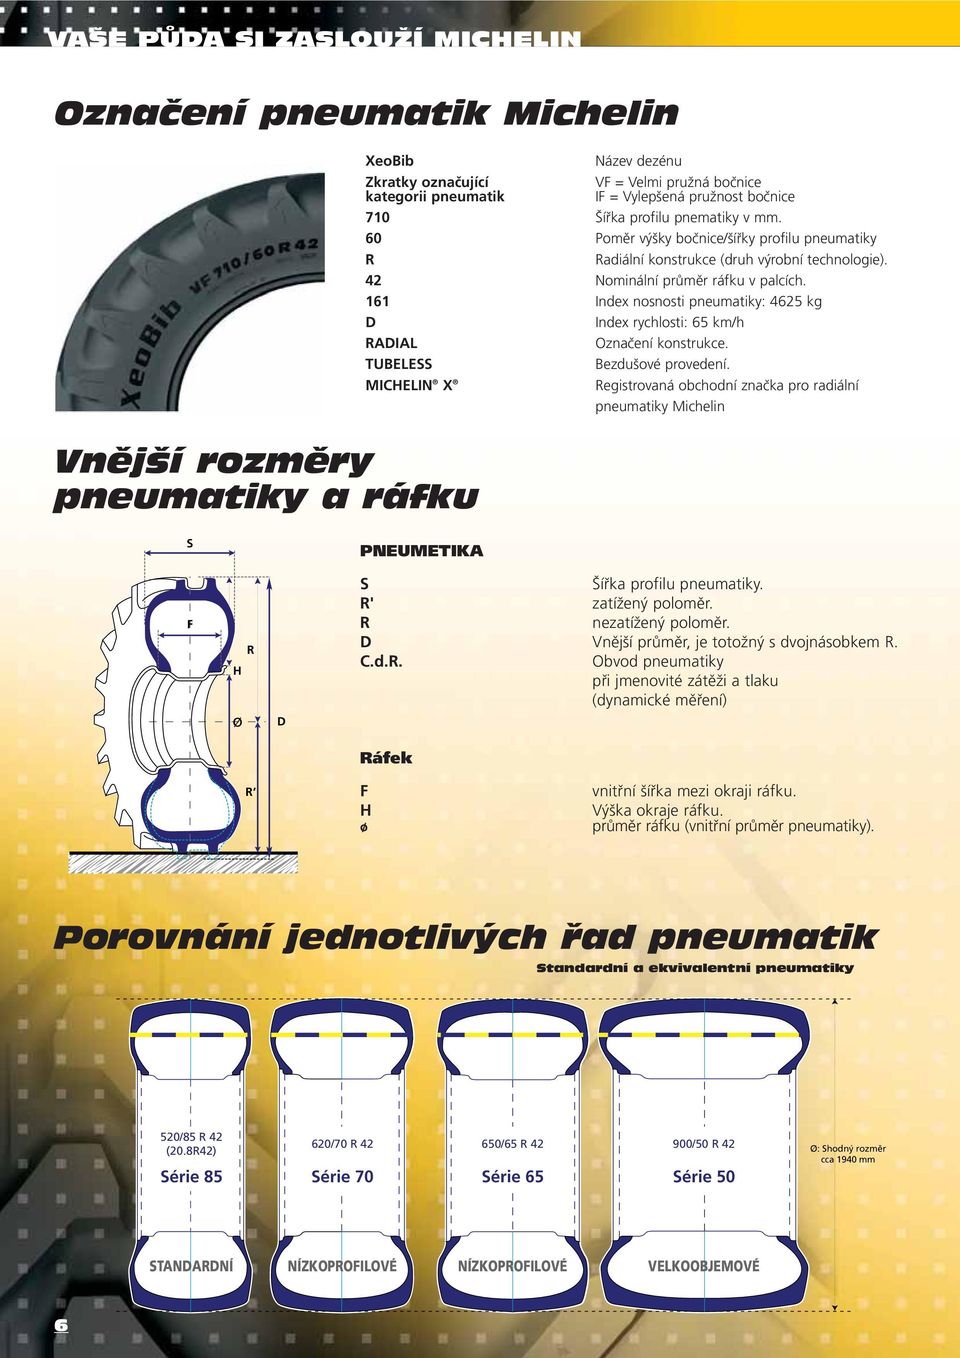 161 Index nosnosti pneumatiky: 4625 kg D Index rychlosti: 65 km/h RADIAL Označení konstrukce. TUBELESS Bezdušové provedení.